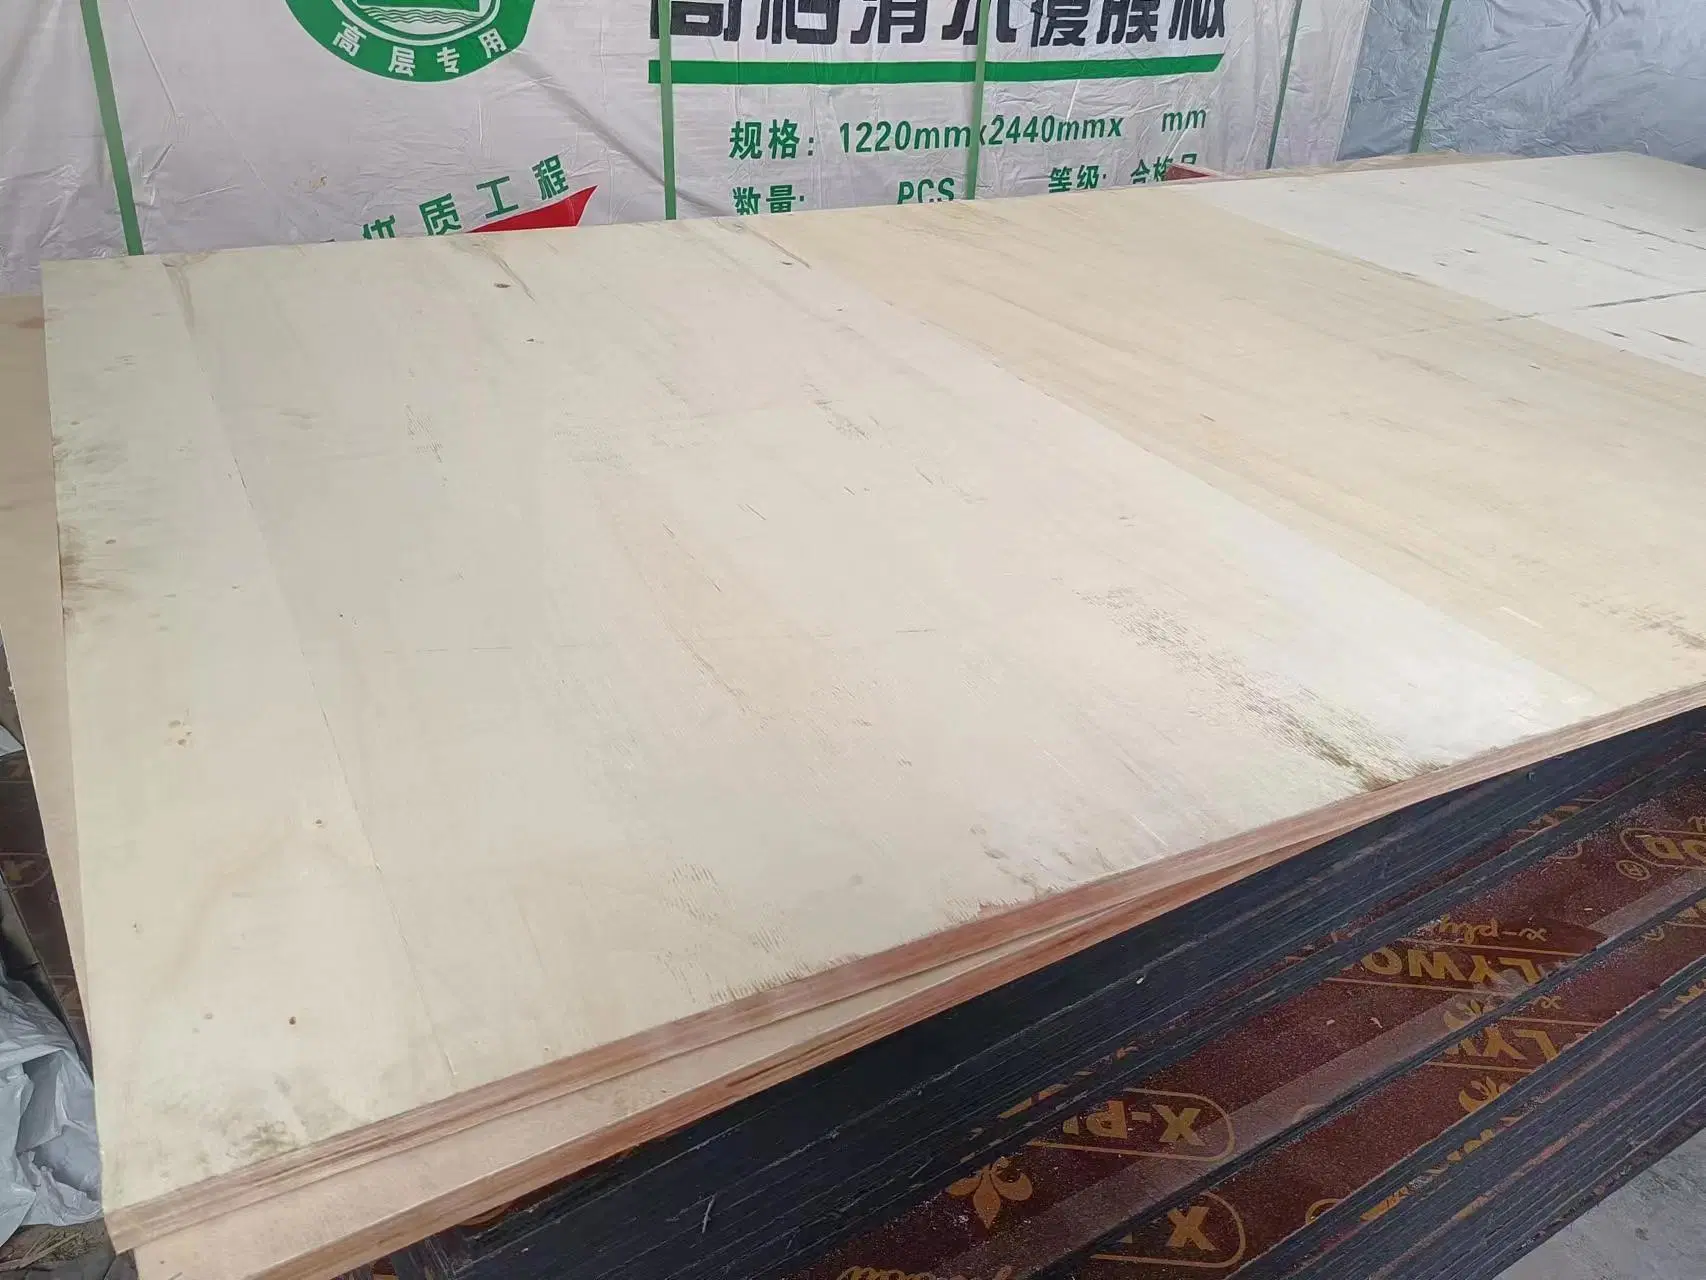 Poplar Plywood in Melamine Board / Marine Plywood / Birch Plywood/Bamboo Plywood